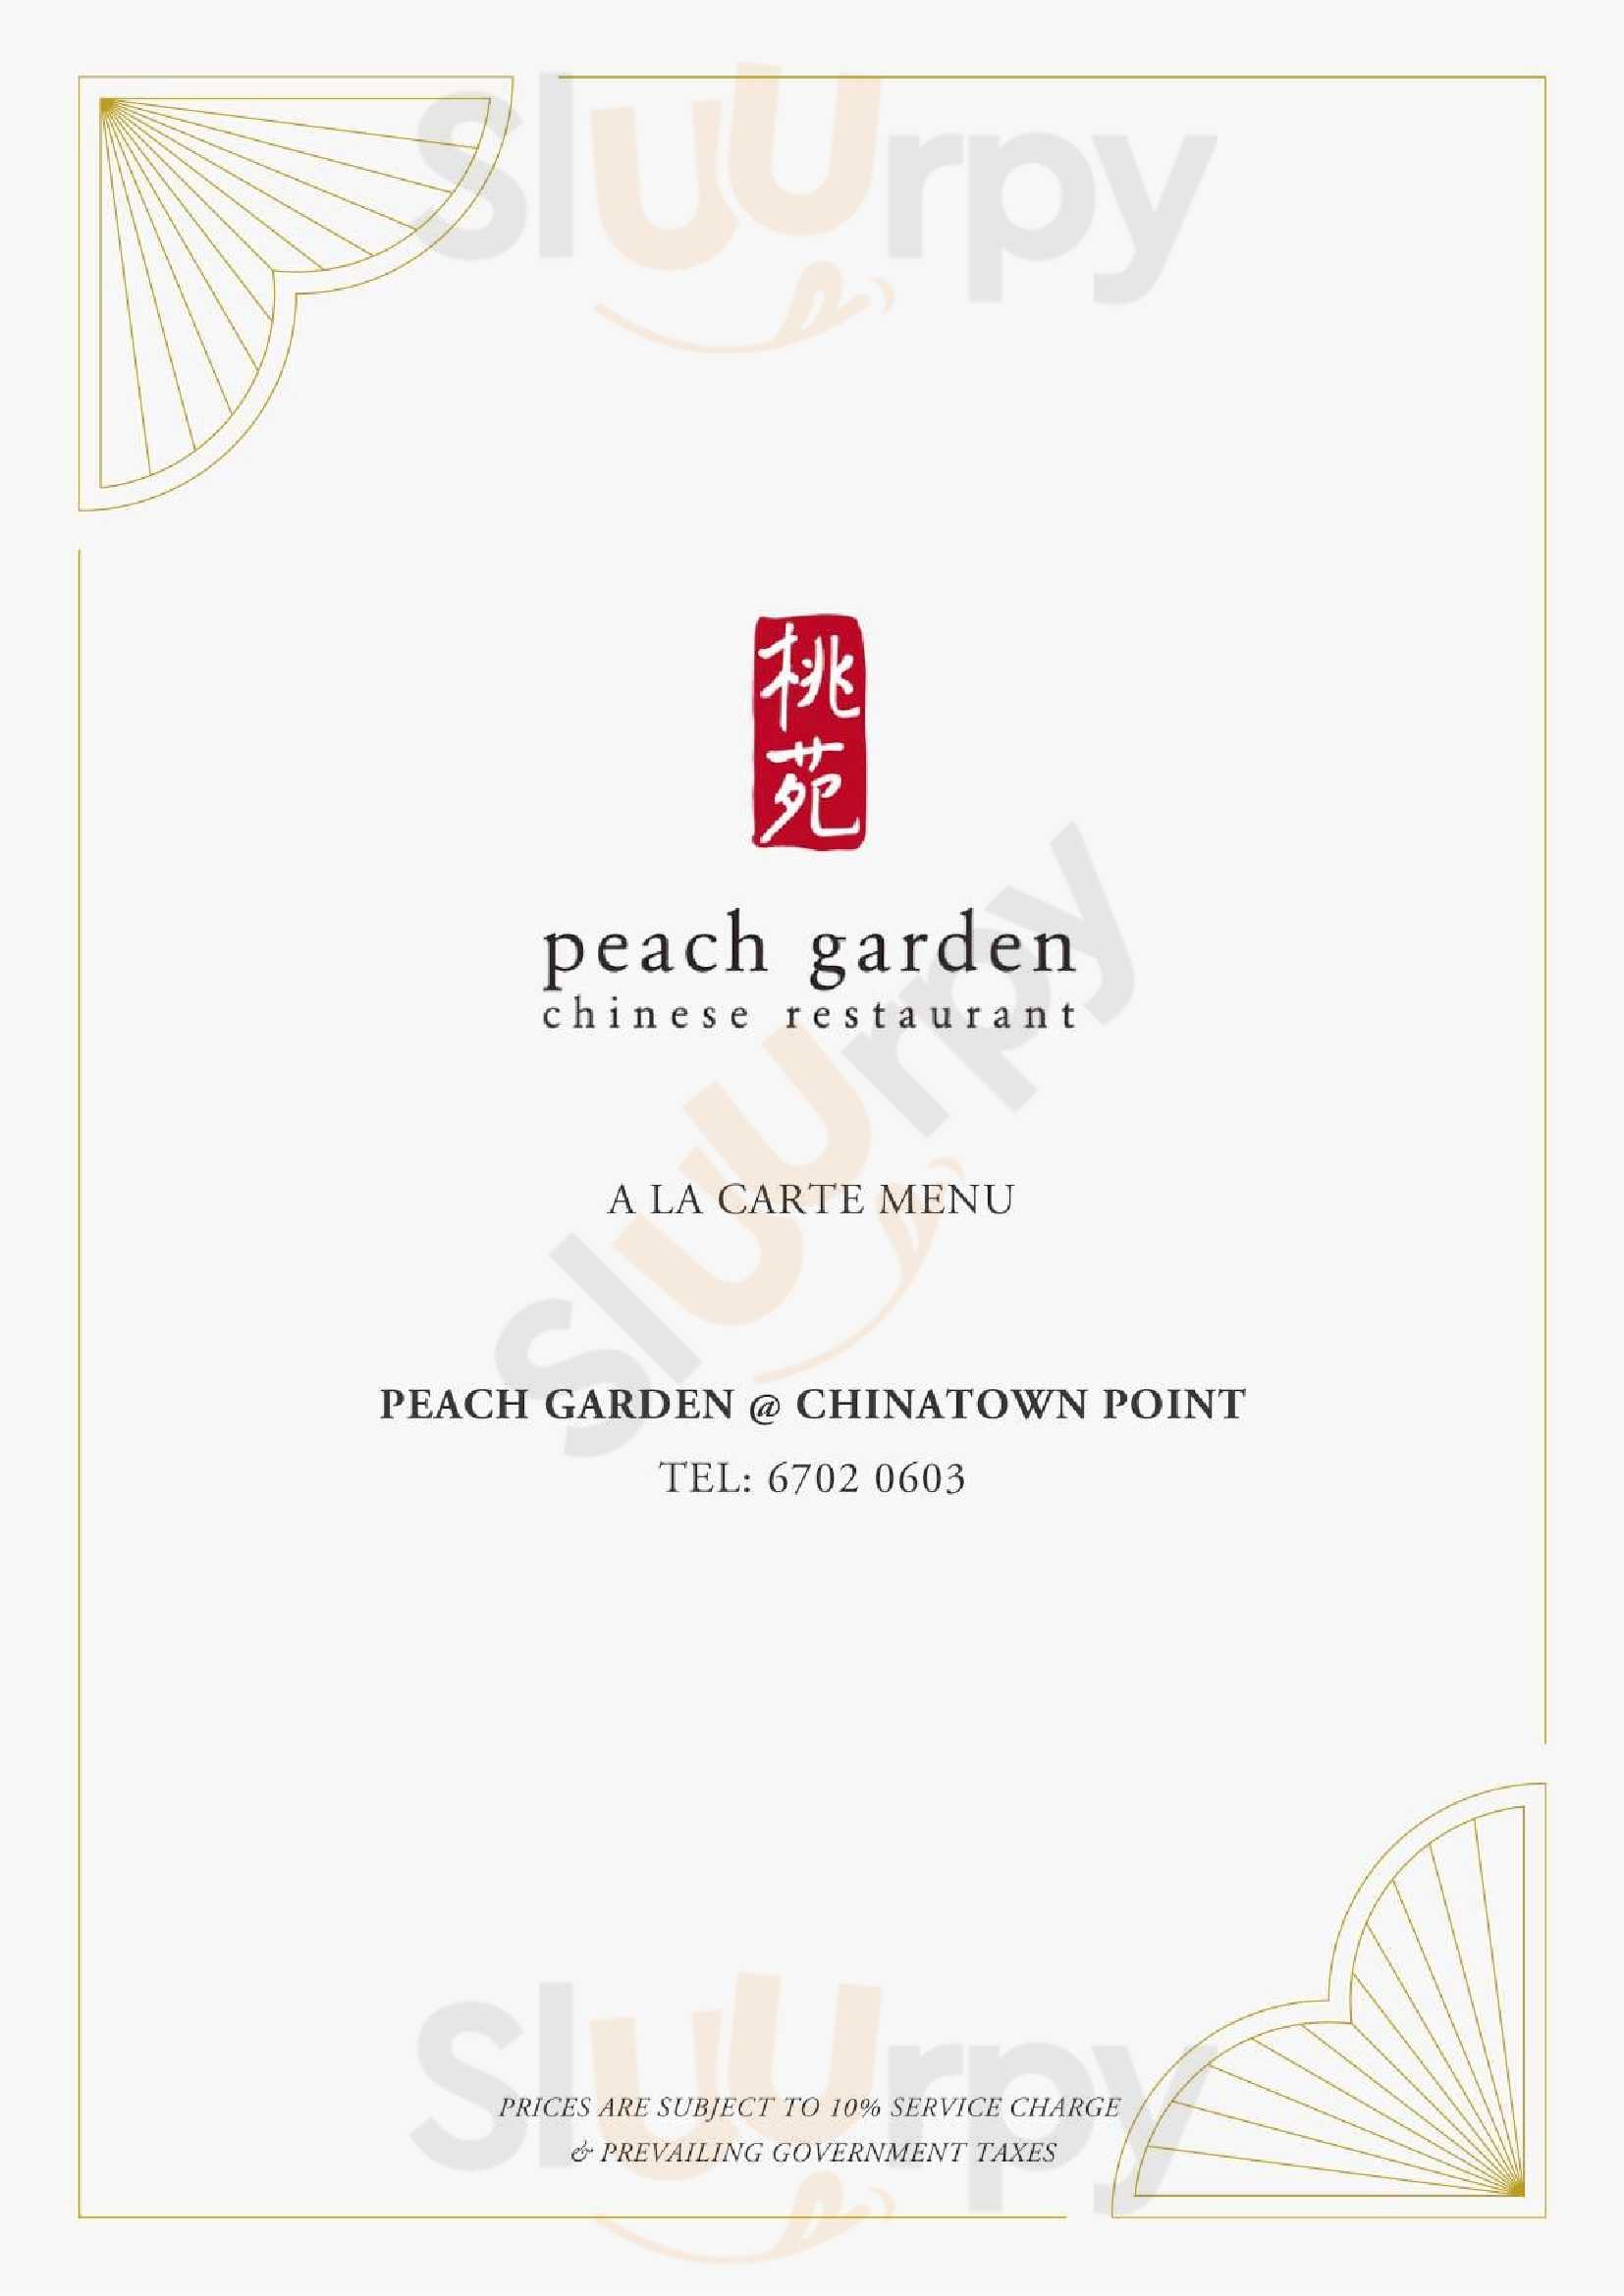 Peach Garden At Chinatown Point Singapore Menu - 1